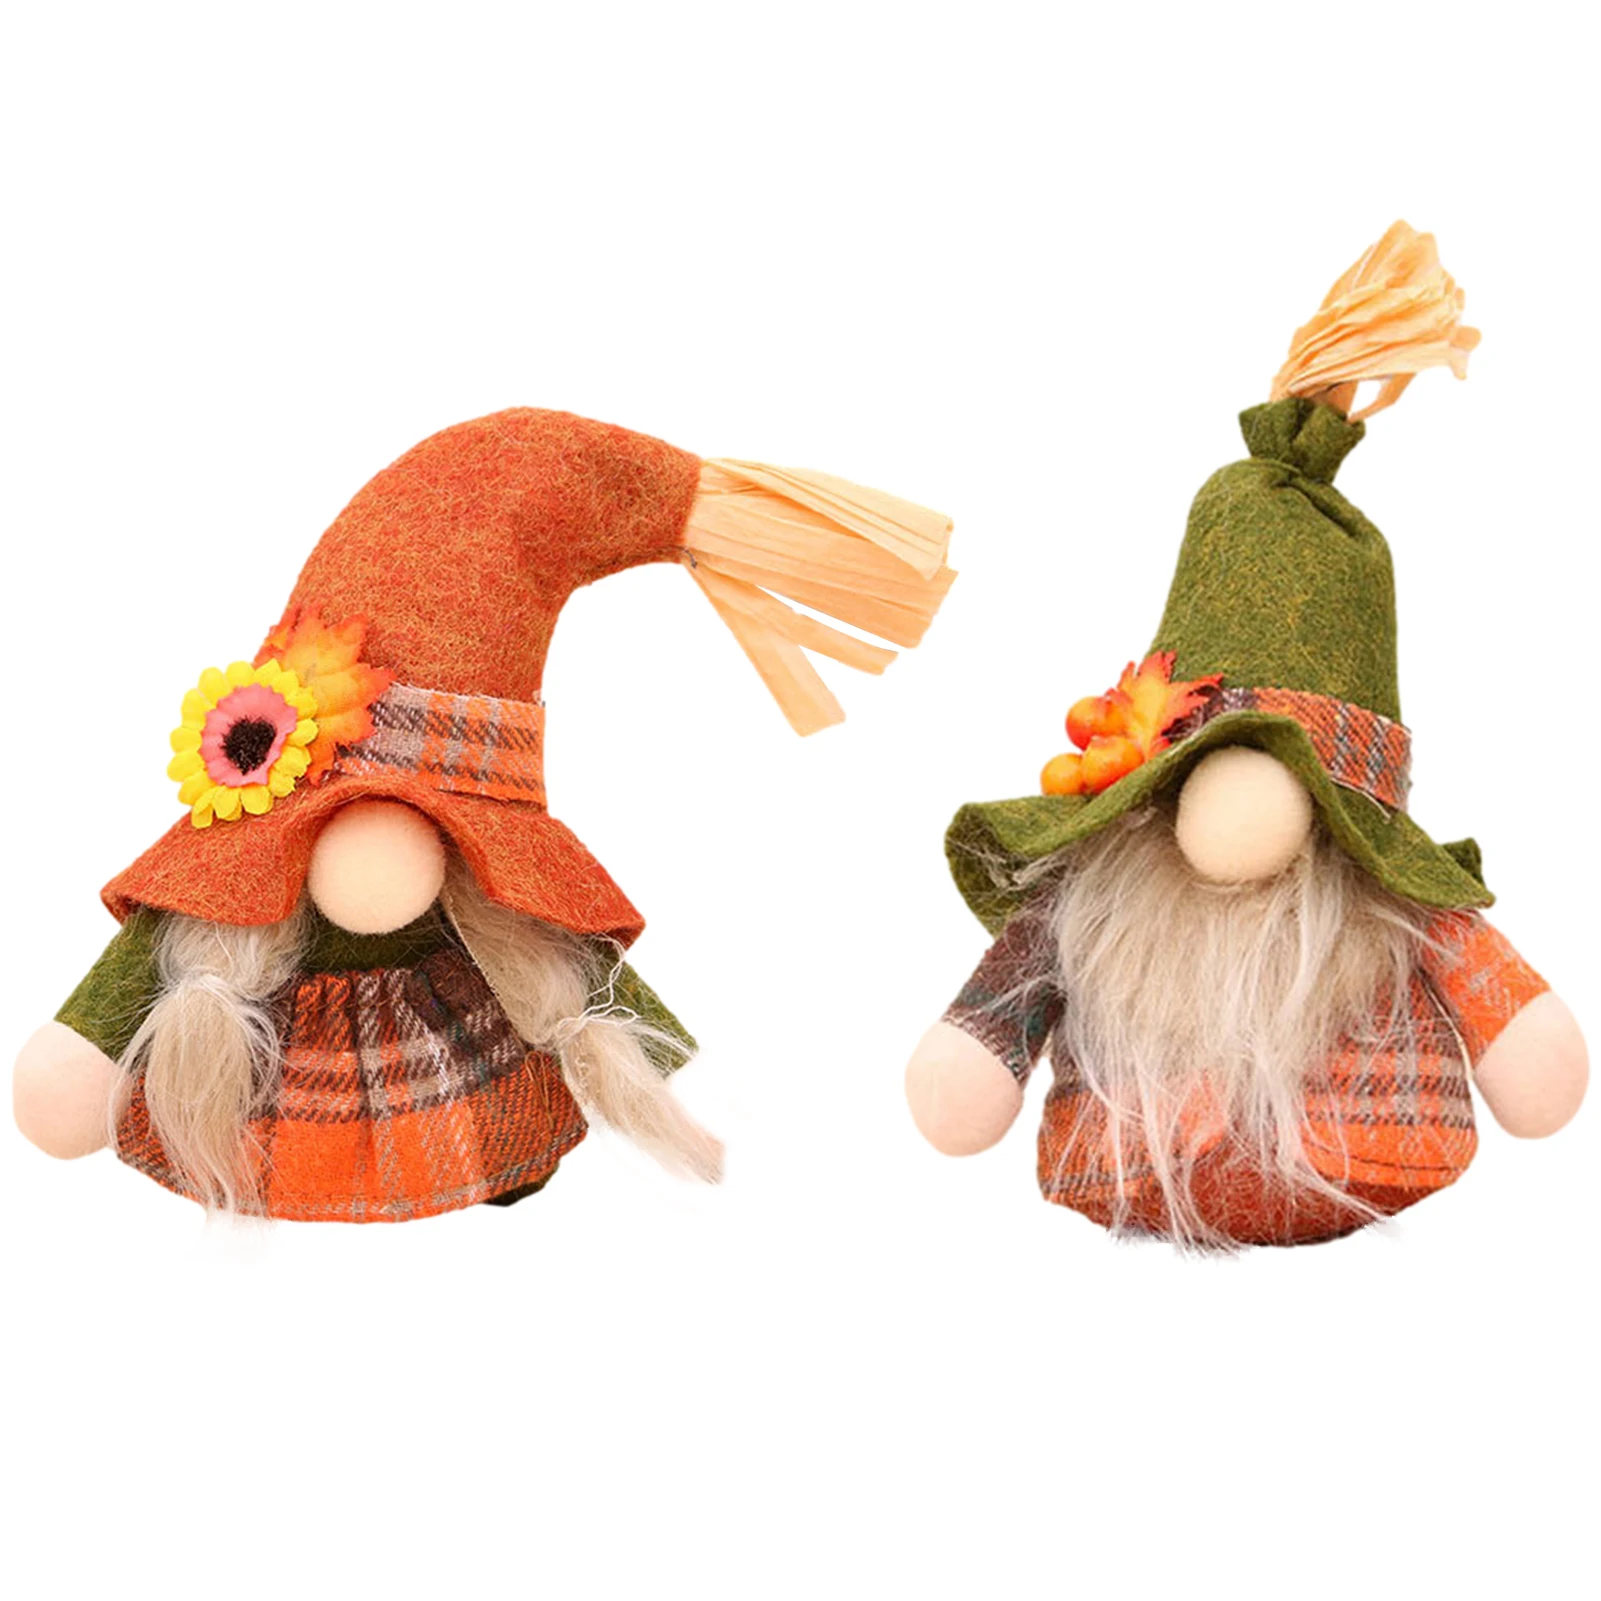 Kép /Karácsonyi-arctalan-gnome-plüss-baba-santa-gnome-1-110892-thumb.jpg